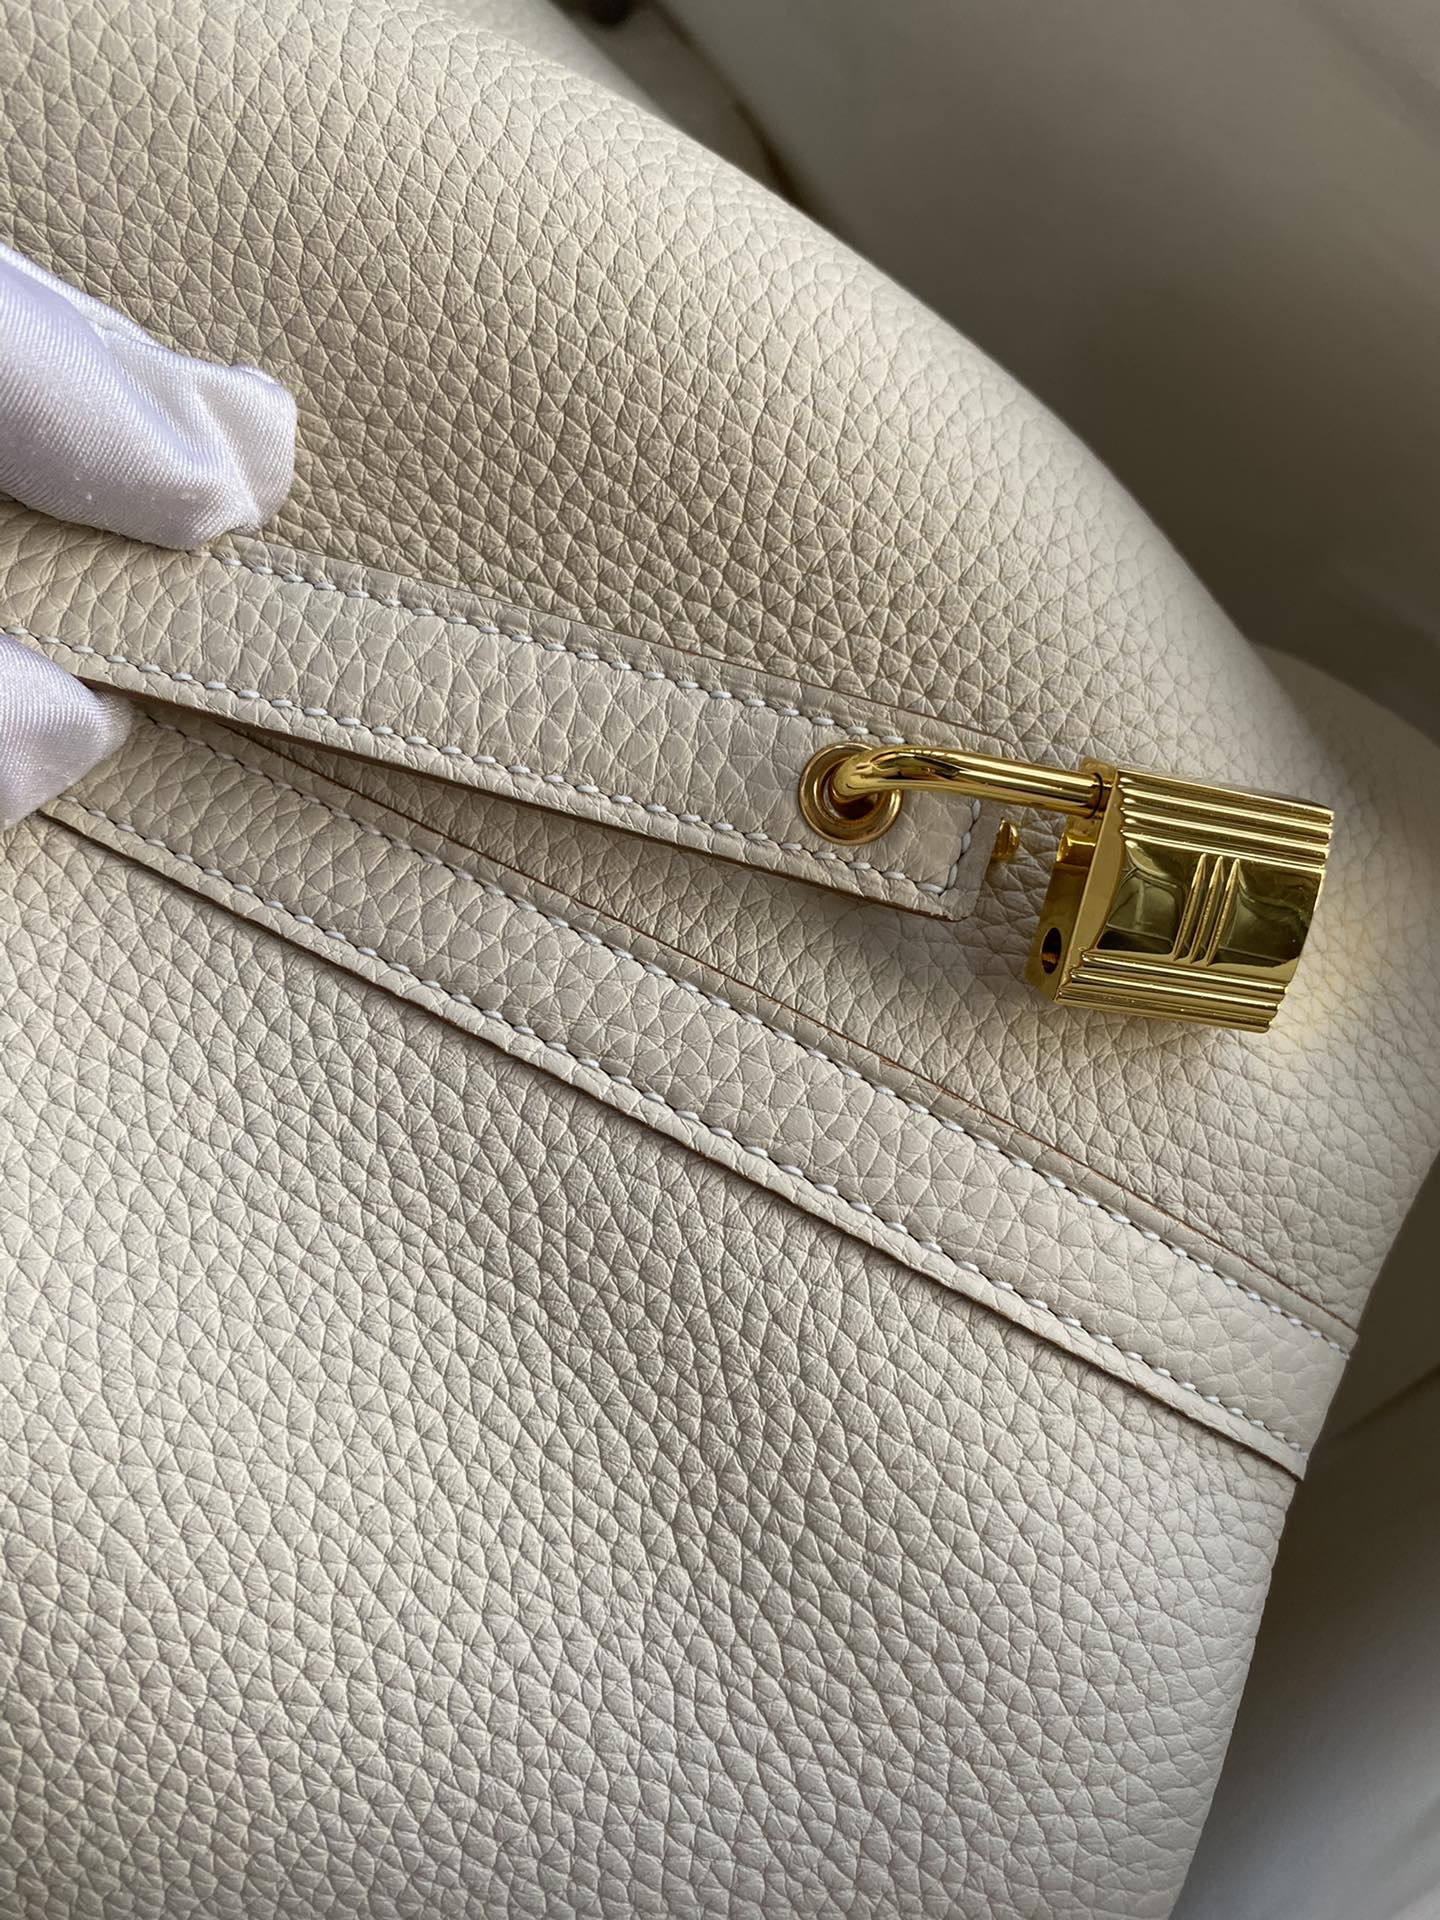 Hermes - Lindy, Picotin & leather bag charms.